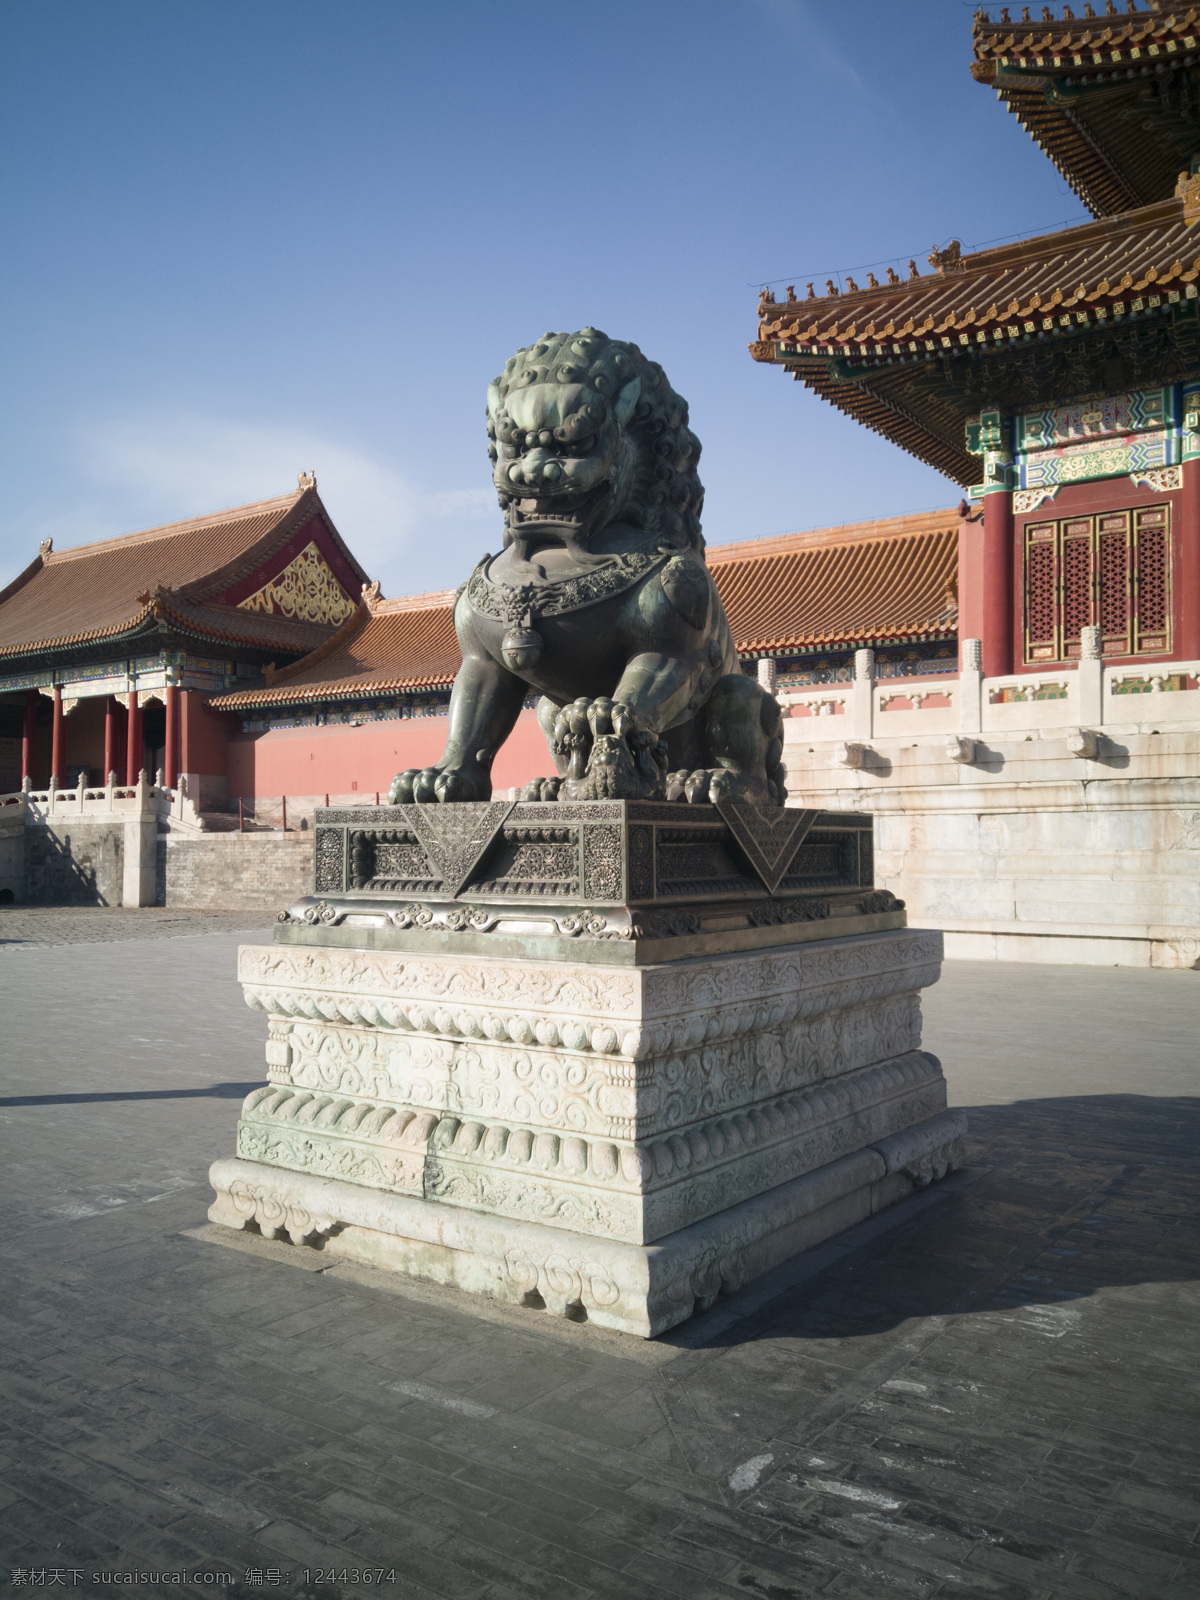 故宫铜狮 狮子 故宫 铜狮 瑞兽 中国 传统 守卫 威猛 气势 皇家 北京 高清大图 建筑园林 雕塑